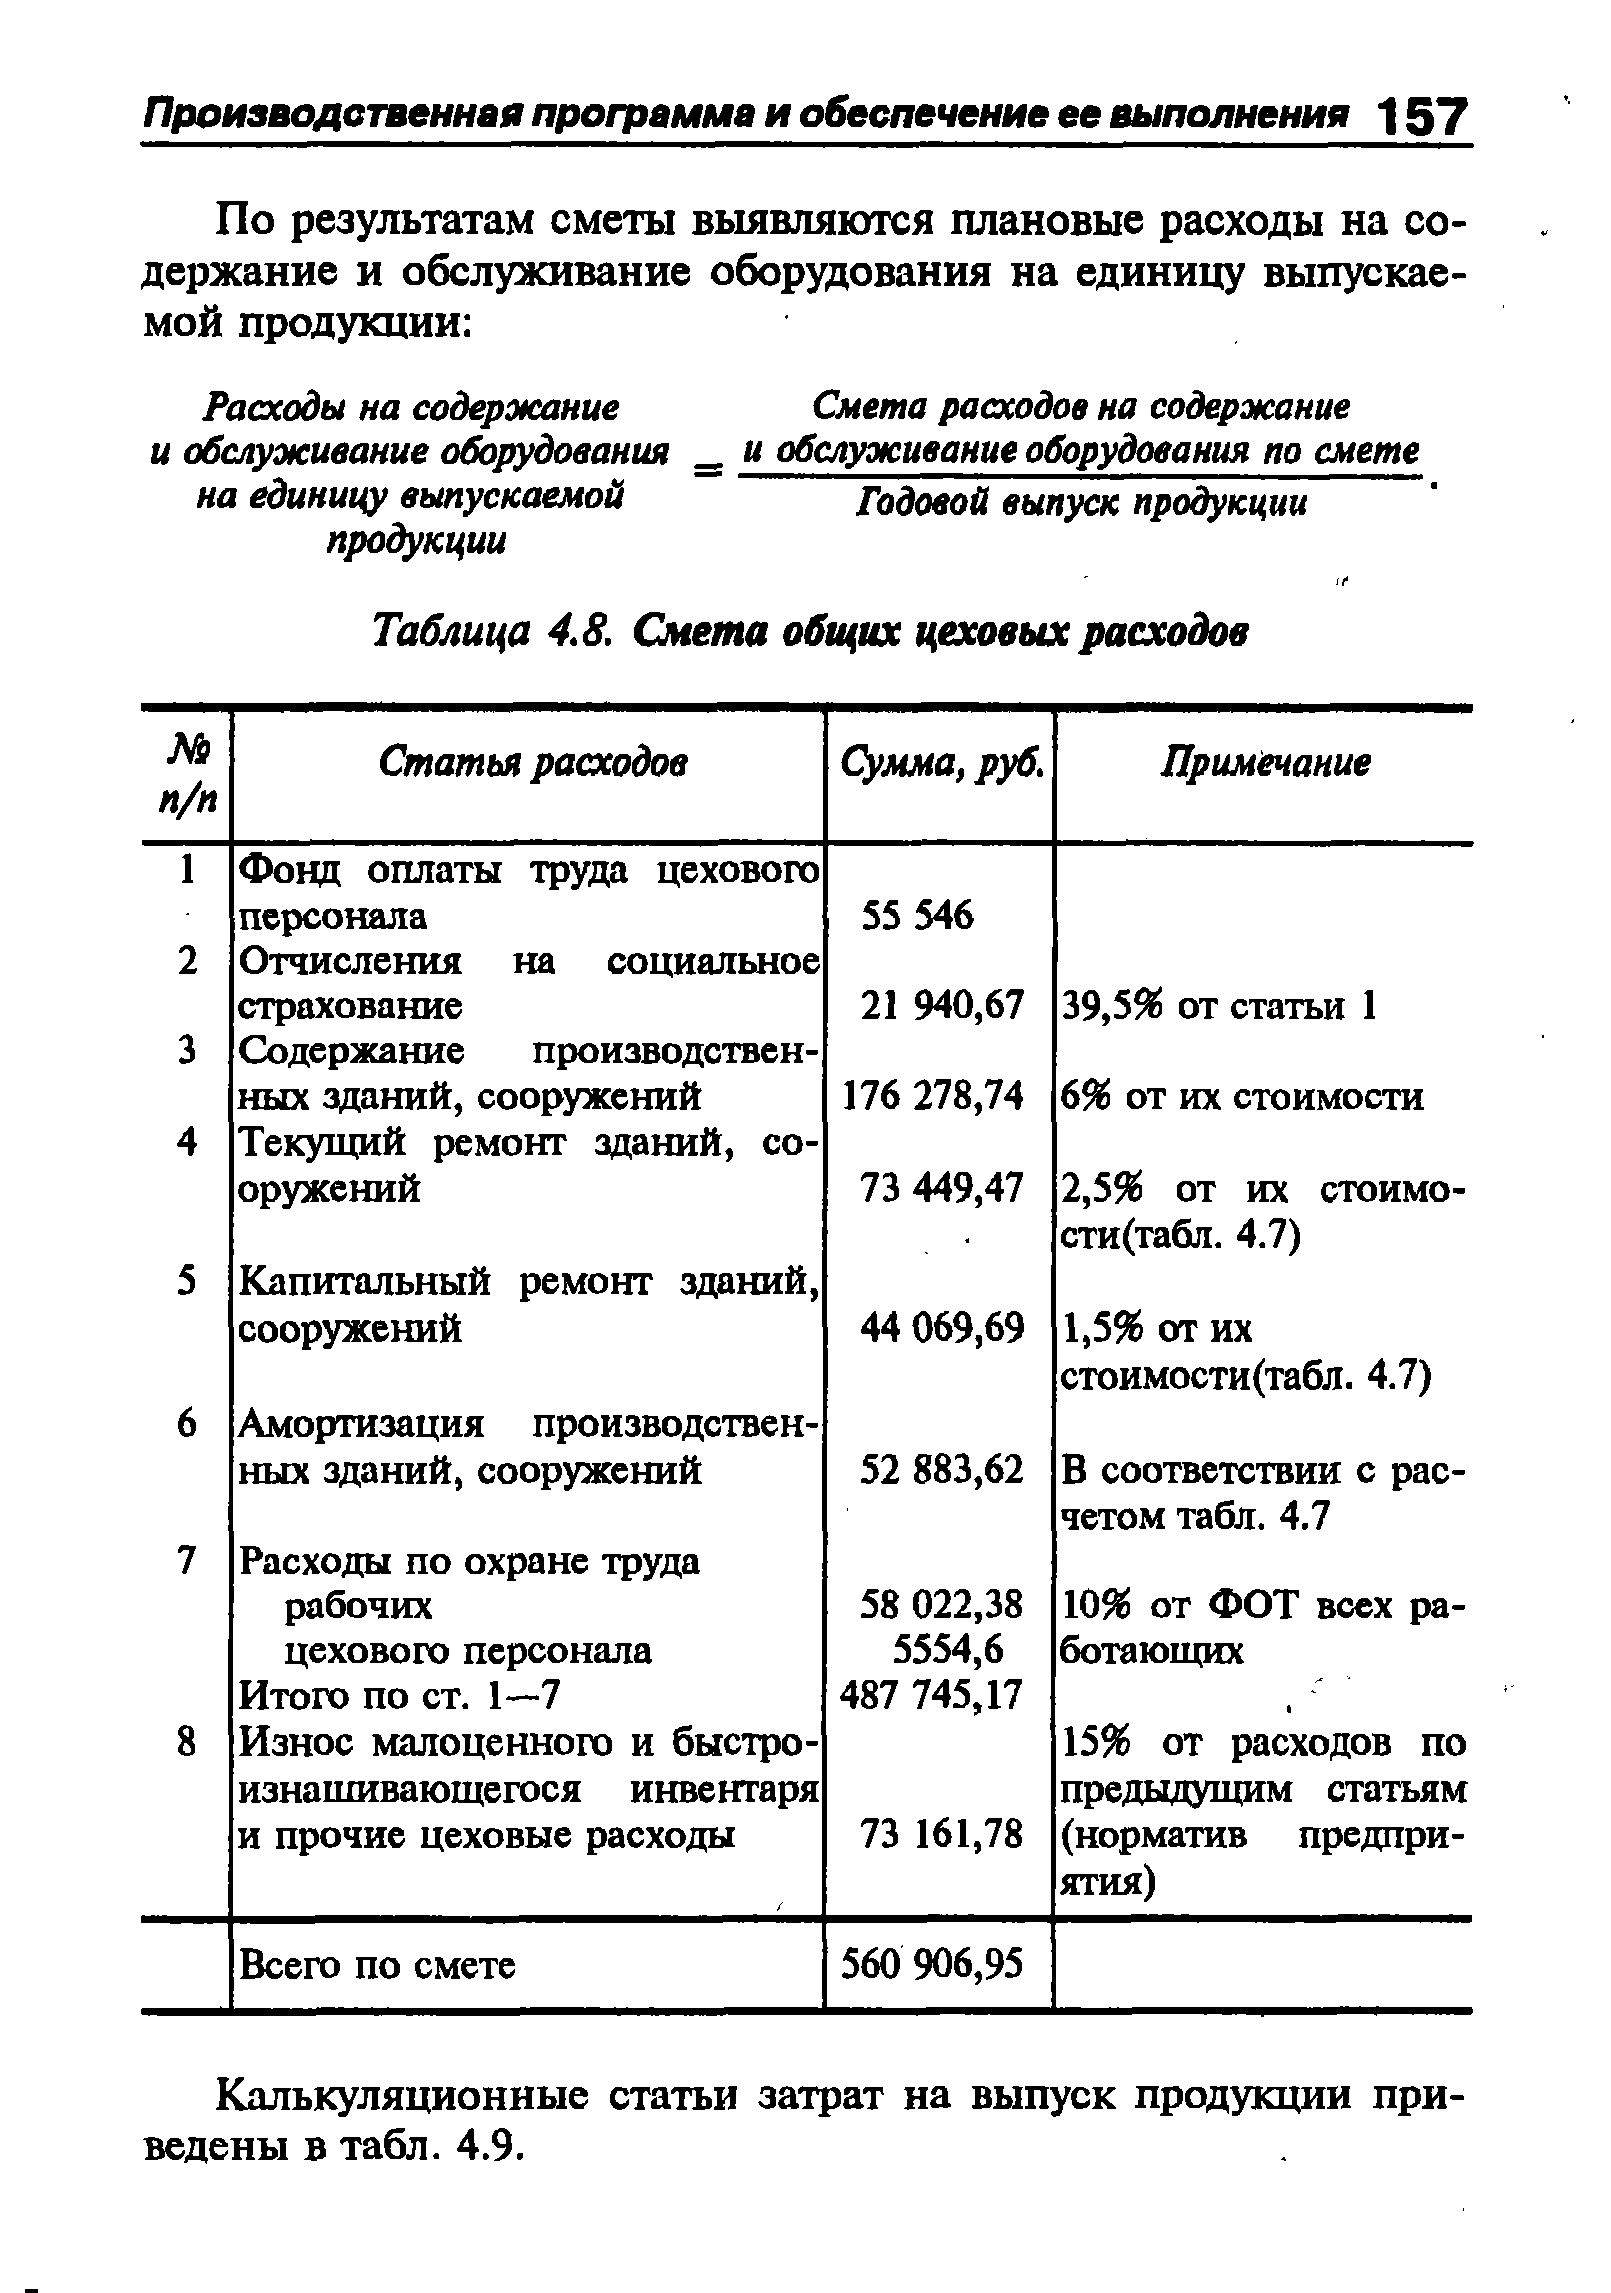 Таблица 4.8. Смета общих цеховых расходов
